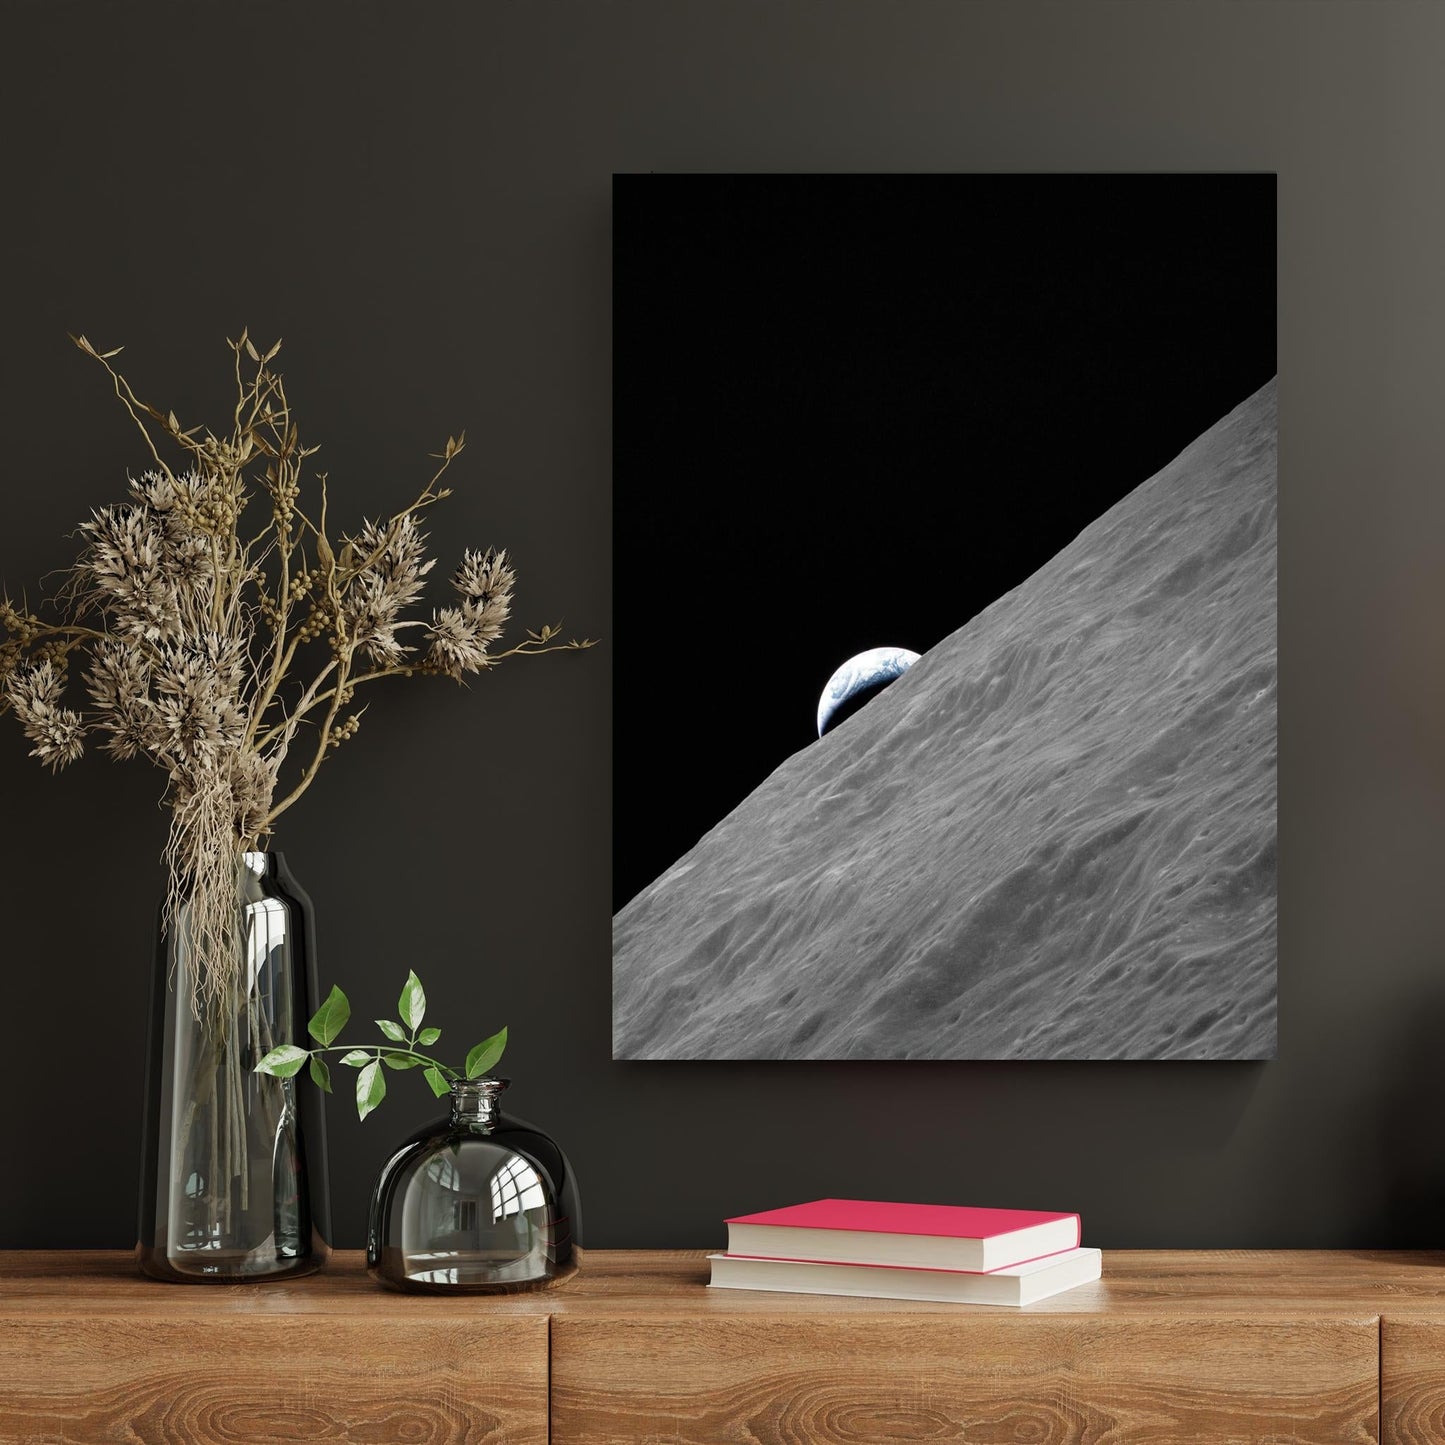 Crescent Earth: Apollo 17's Lunar Vista - Atka Inspirations